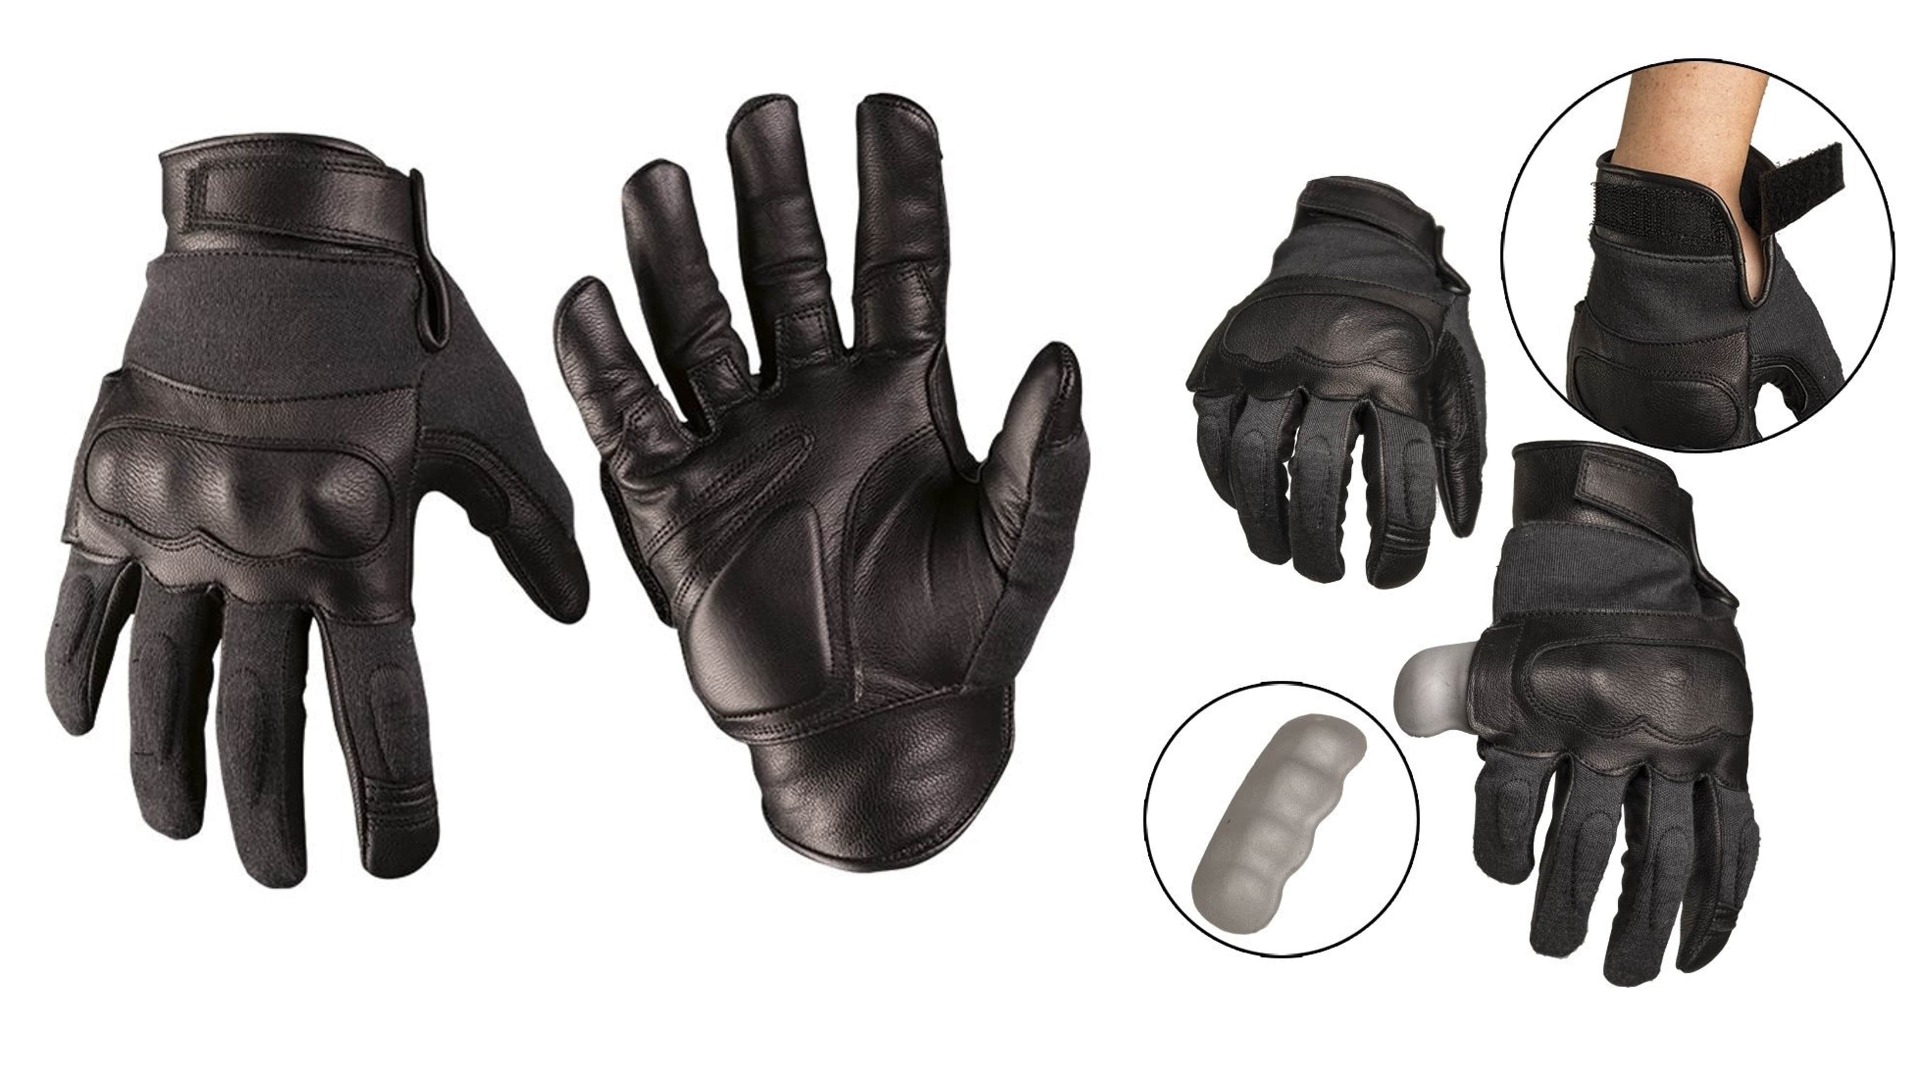  Izberite vrhunske taktične usnjene aramid rokavice, odporne na reze, črne barve. Zagotovite si vrhunsko zaščito in udobje pri delu z odličnim oprijemom. Vzdržljive, trpežne, in večnamenske rokavice za industrijske in obrtniške dejavnosti. Opremljen.si - Zaščitite svoje roke zdaj!